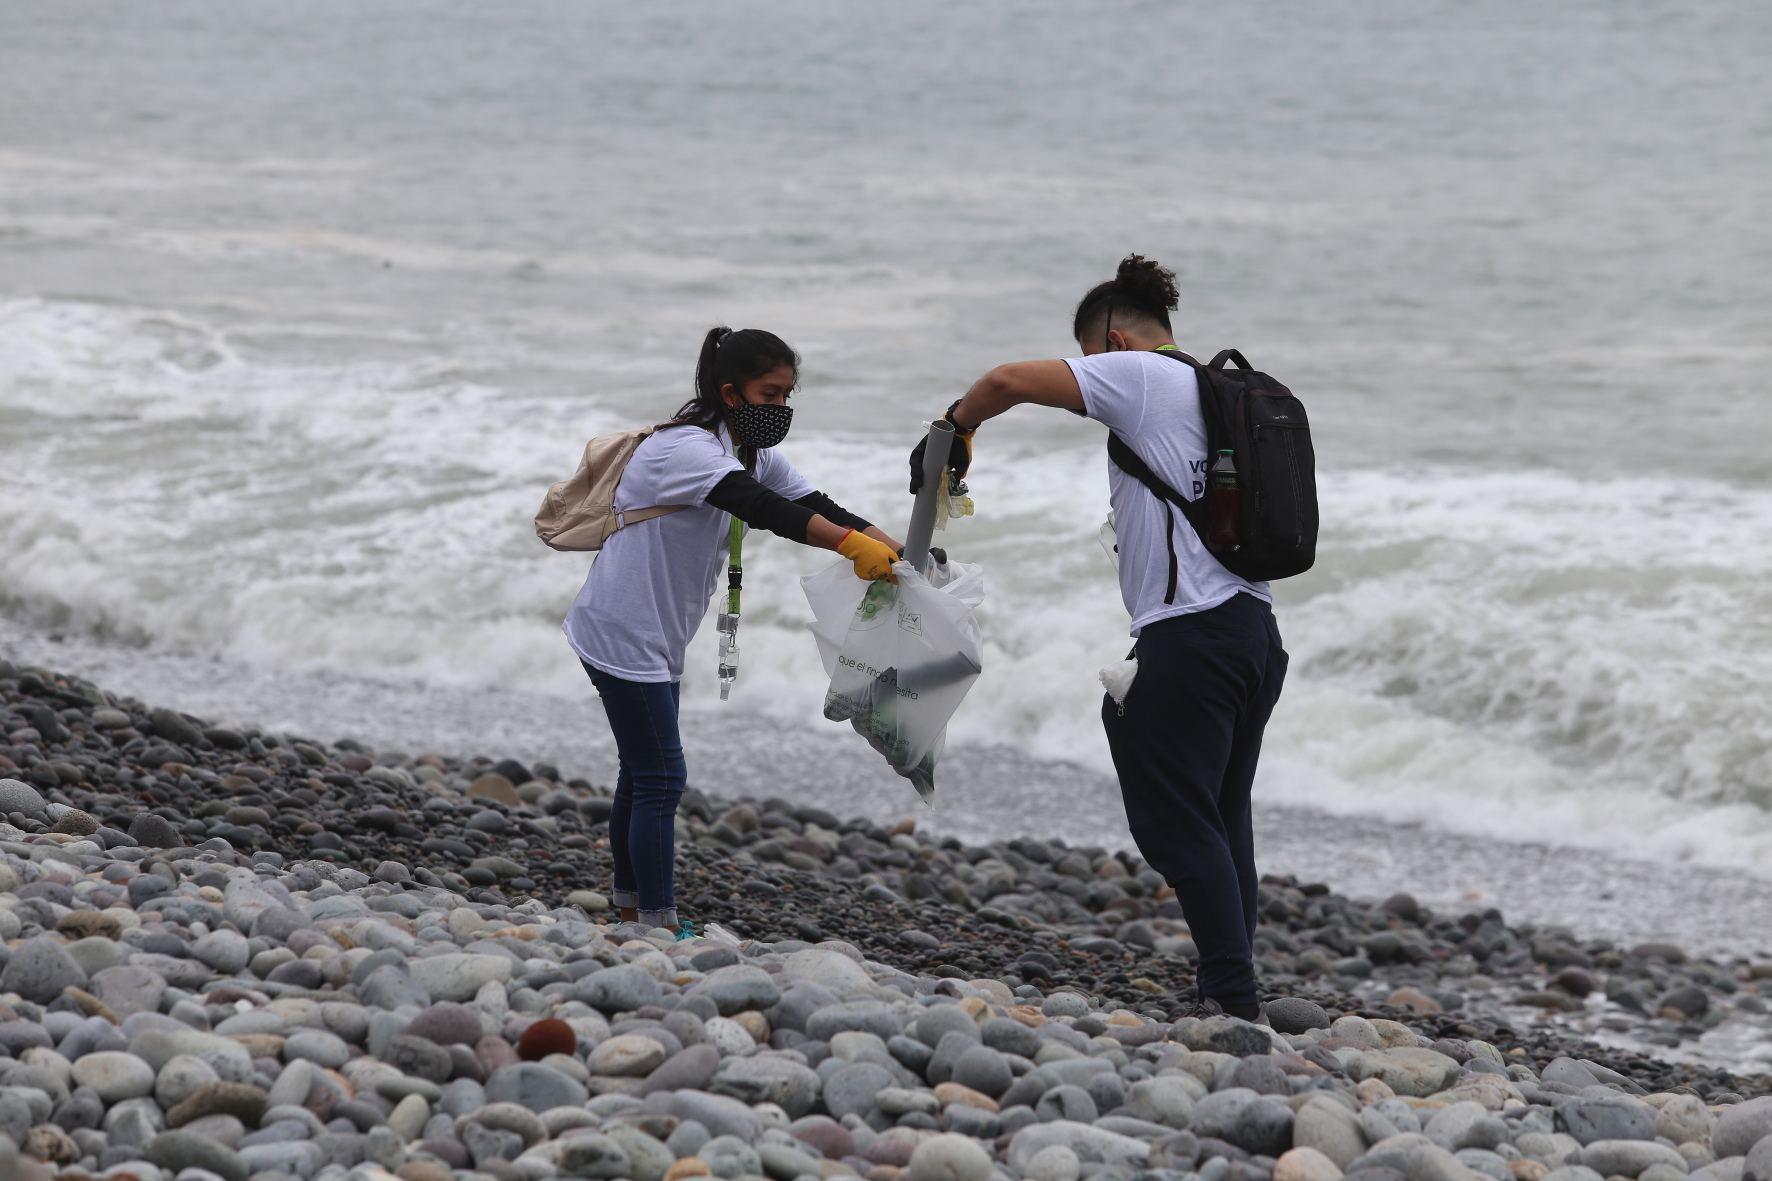 Voluntarios recogen y reciclan 140 kilos de basura en playas de Miraflores